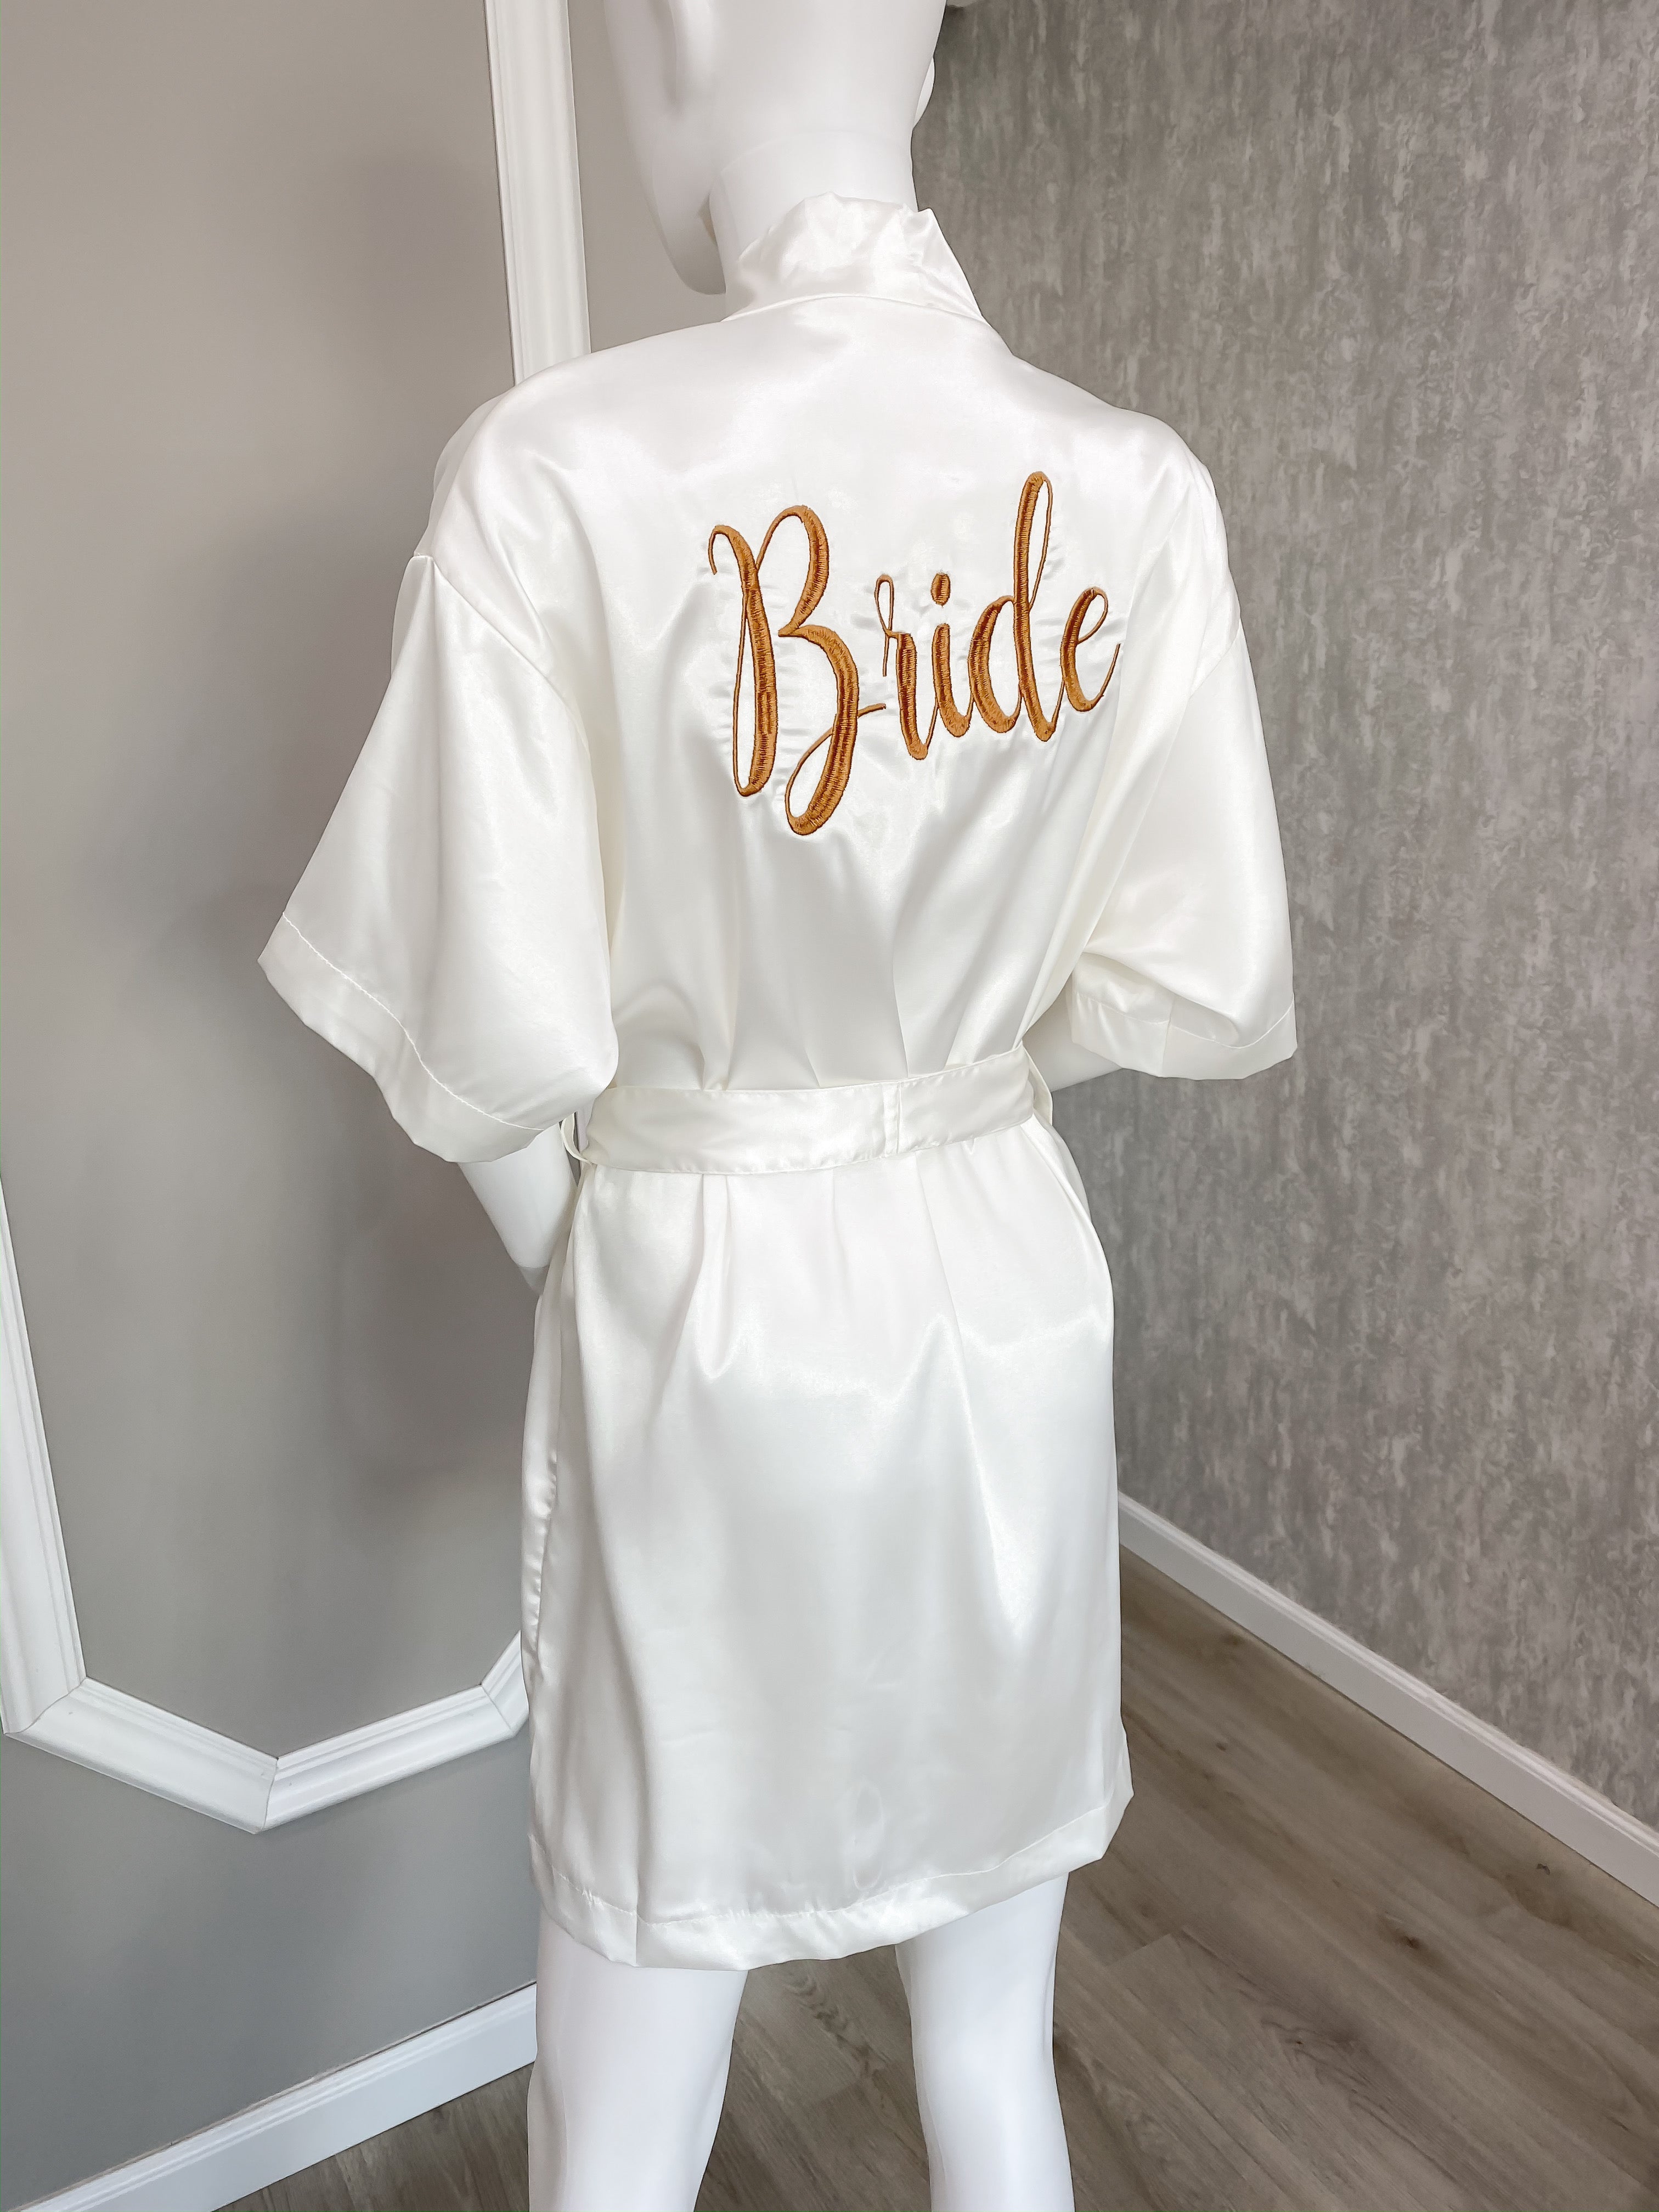 Bata Bordada “Bride” Blanca Oro